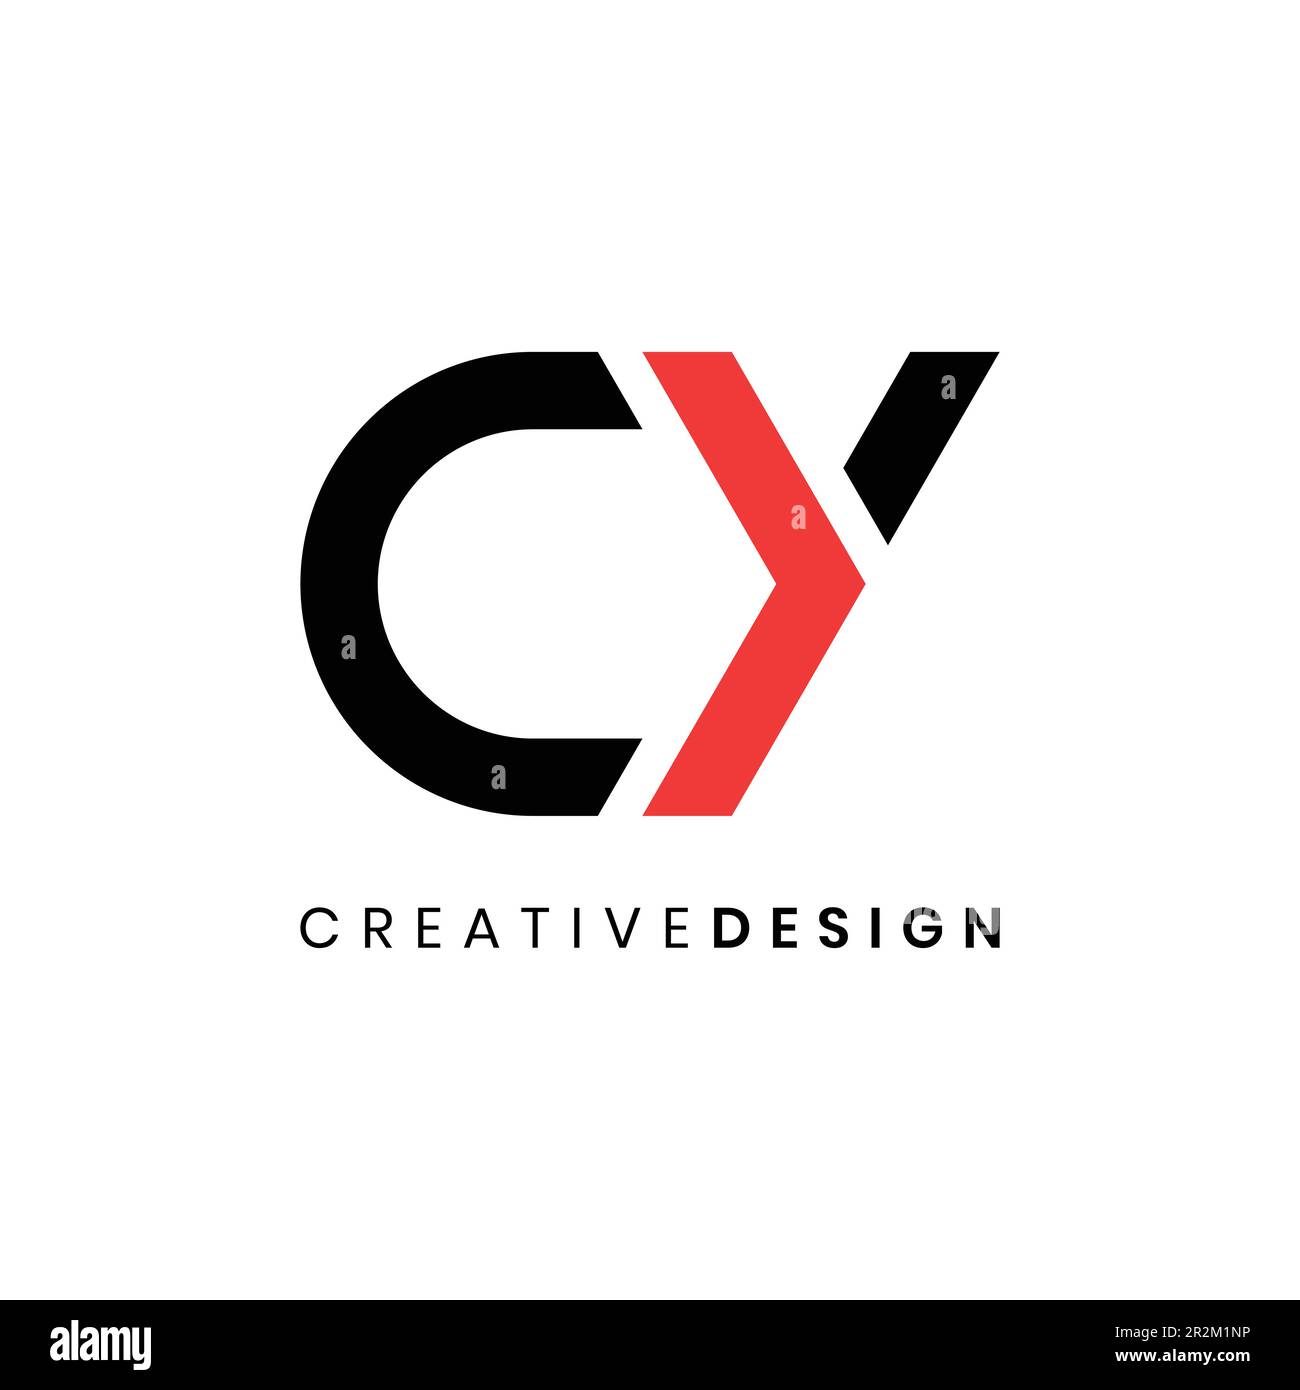 Creative modern letter CY logo design vector with arrow concept Stock Vector